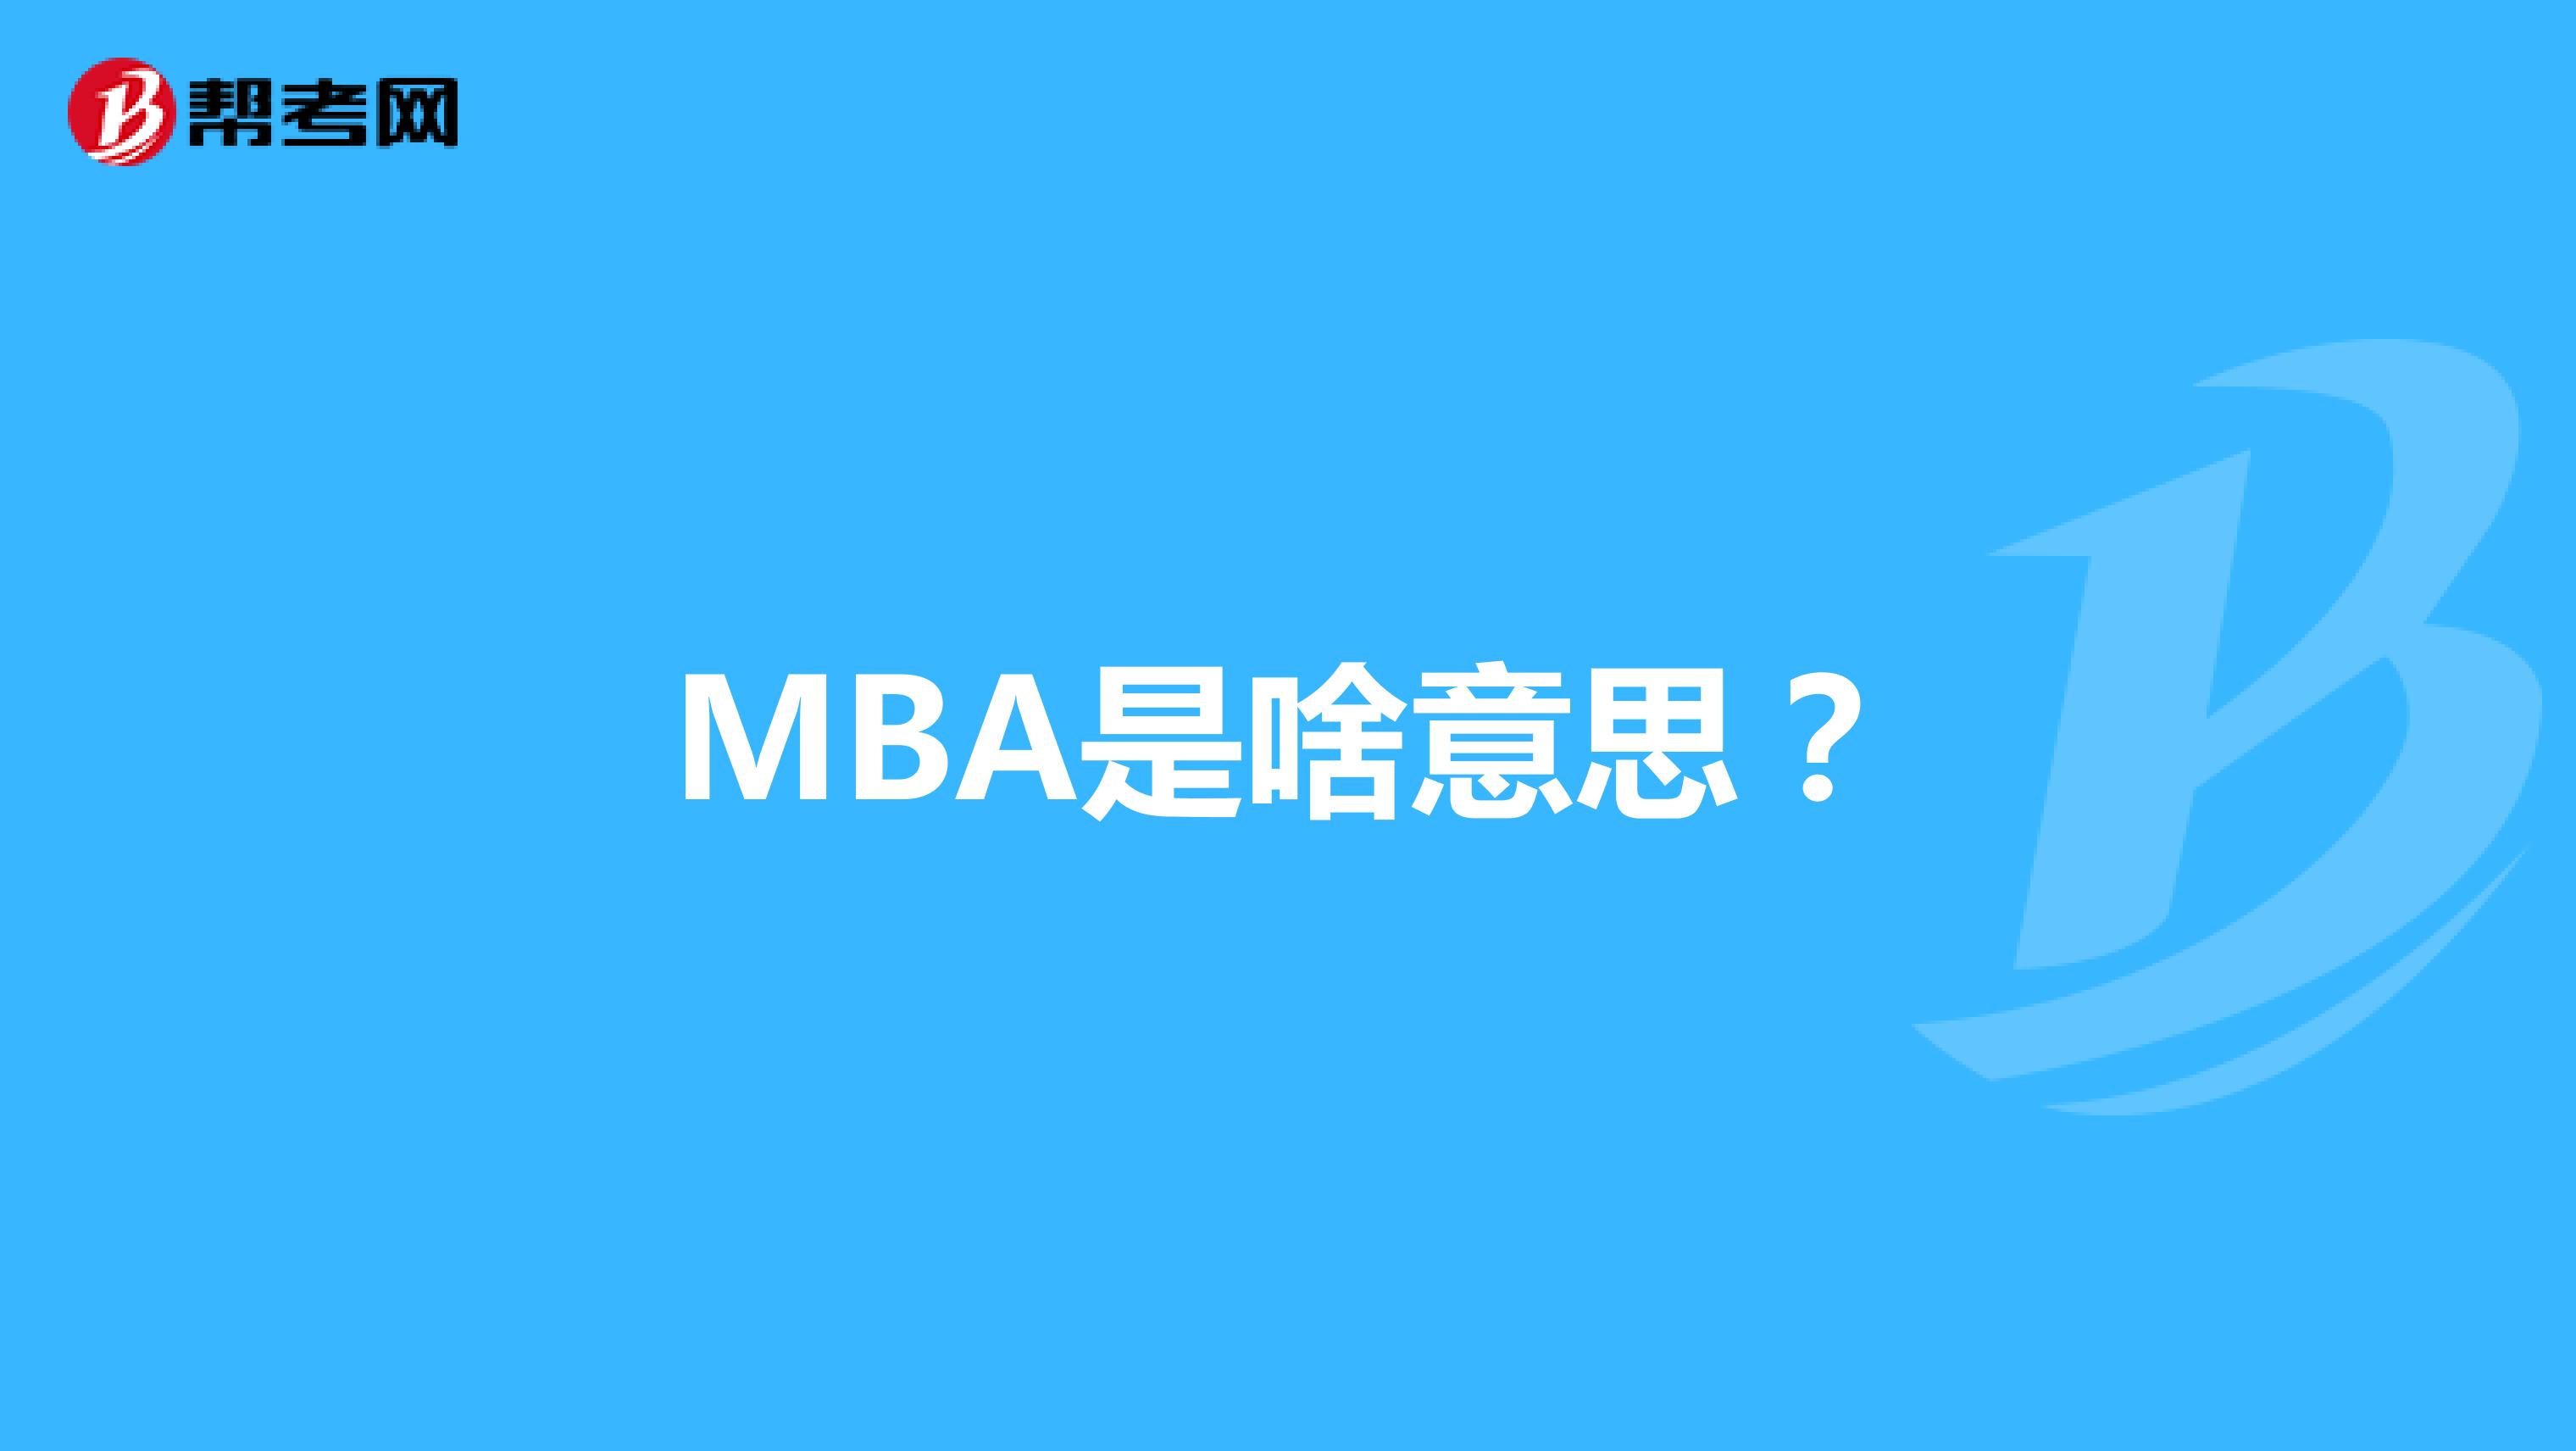 MBA是啥意思？